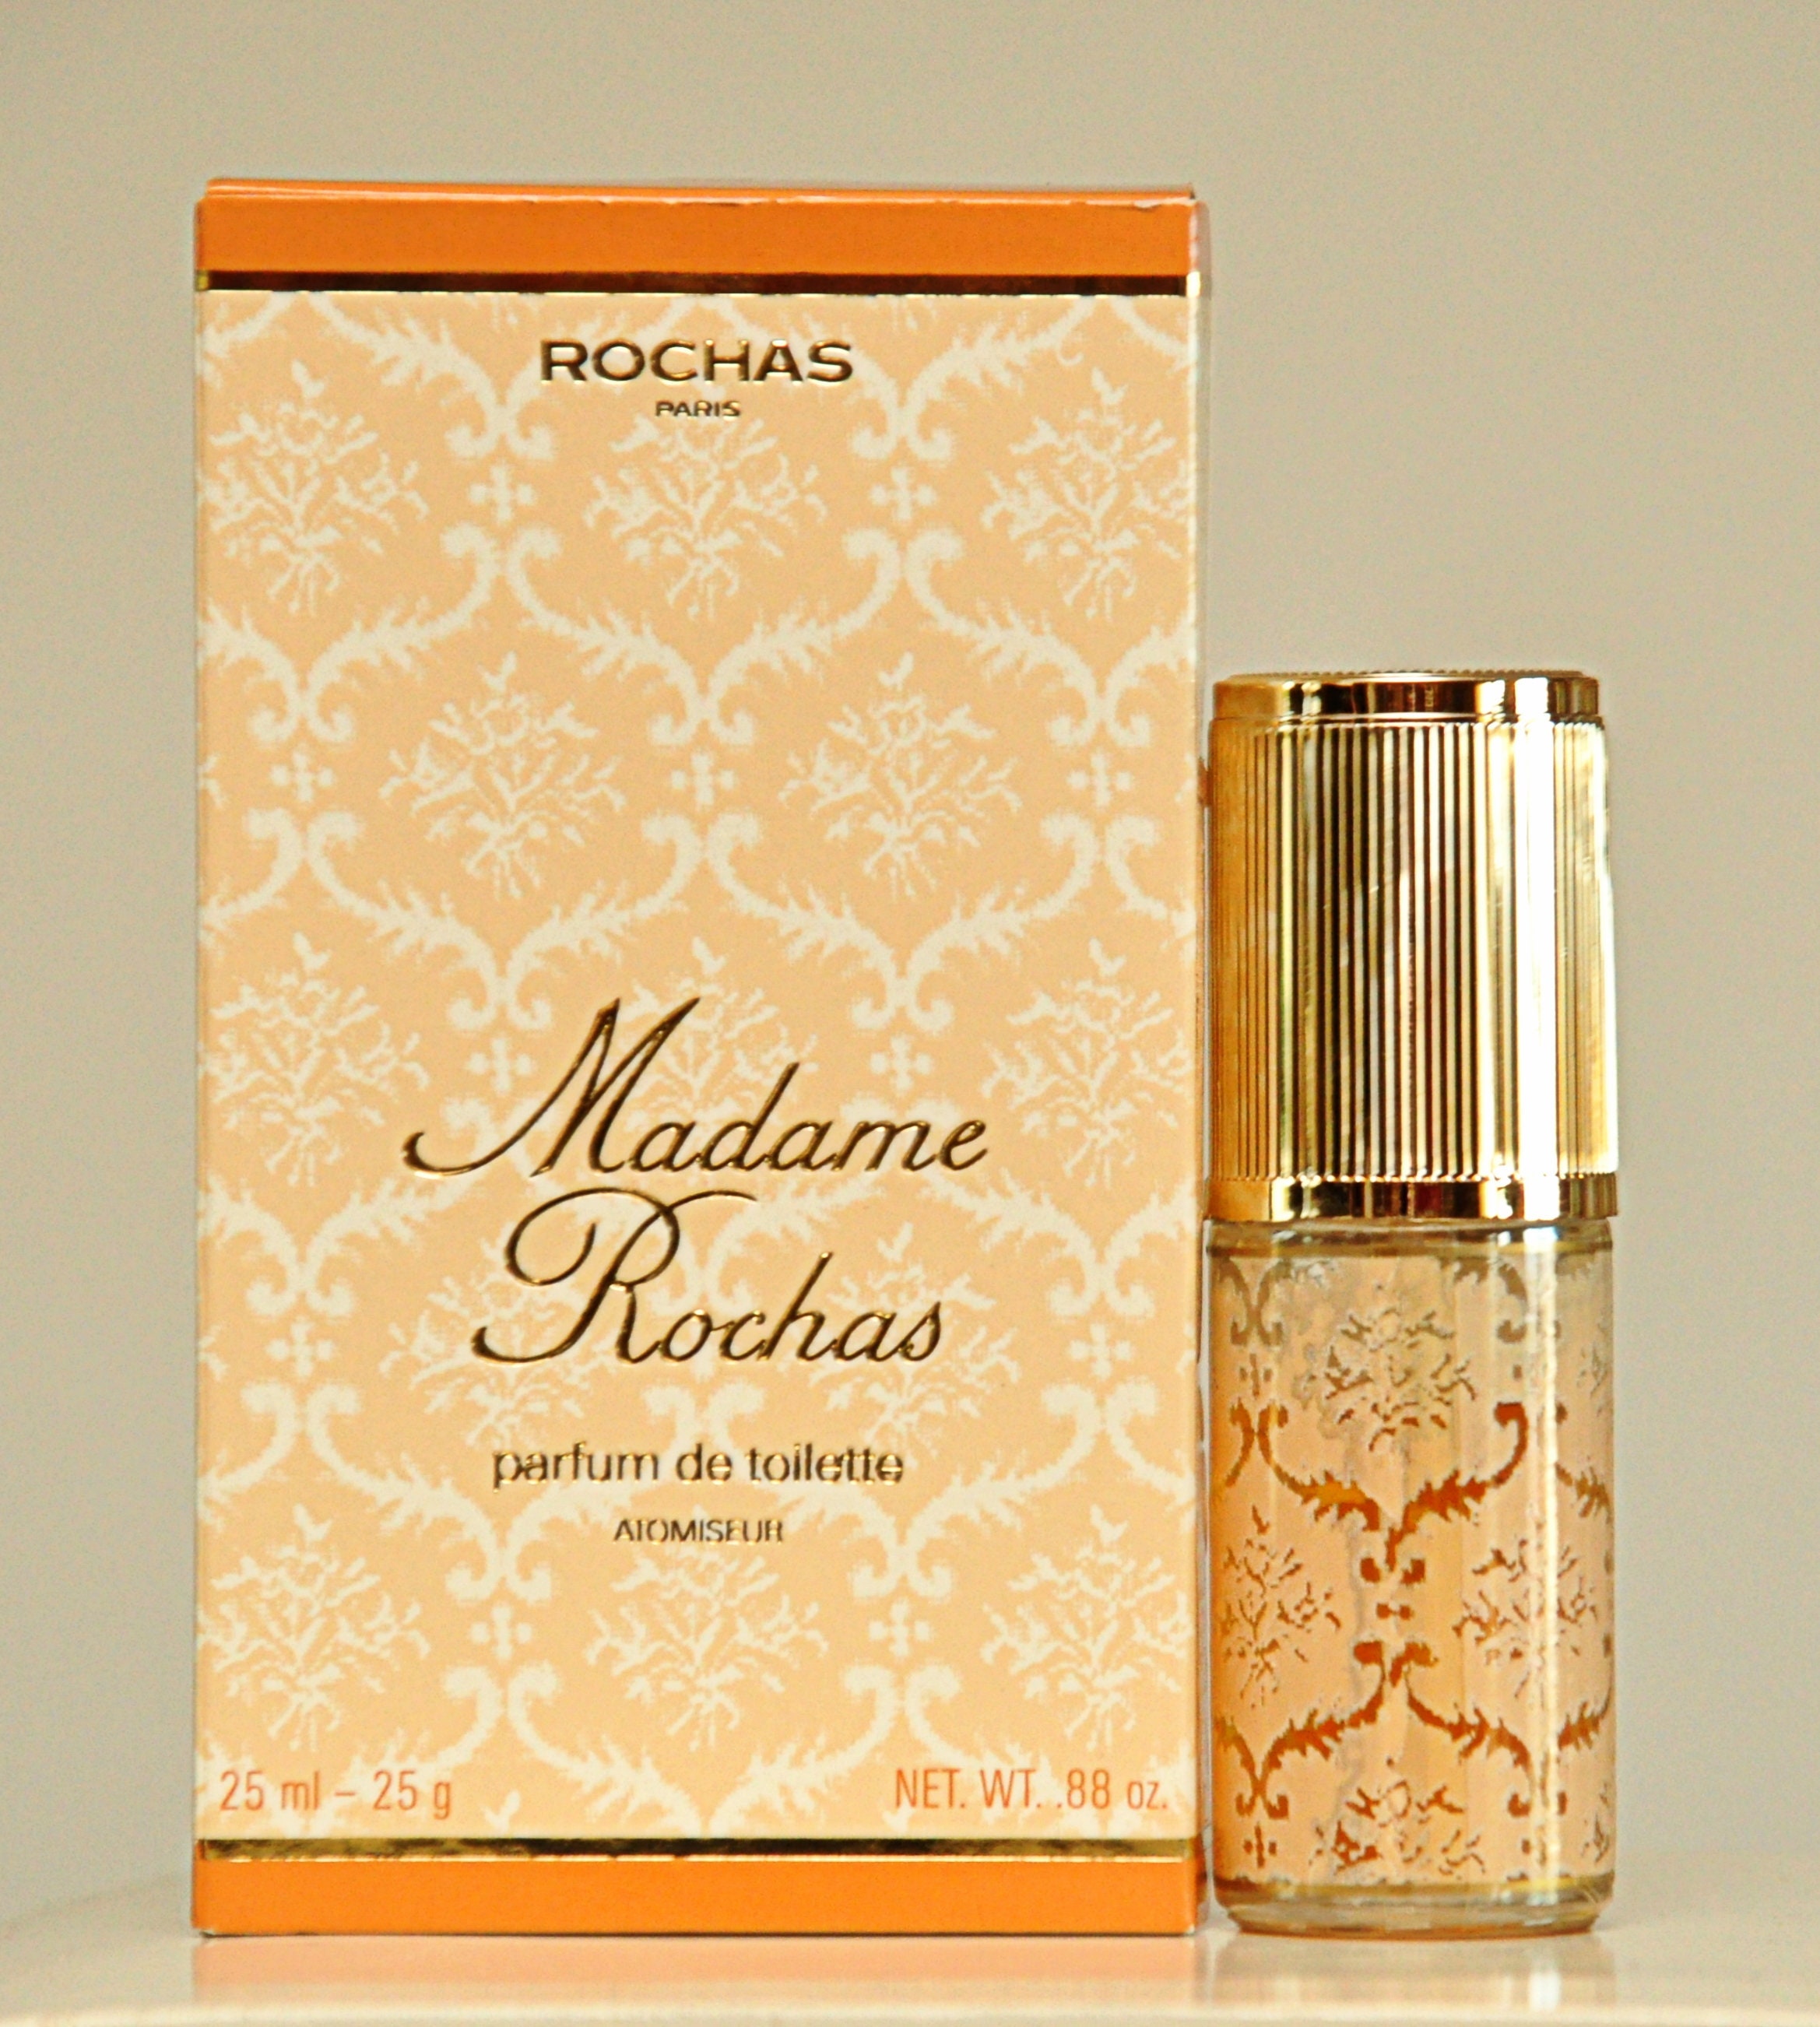 Rochas Madame Rochas Parfum 25ml 0.84 Oz. - Etsy Israel